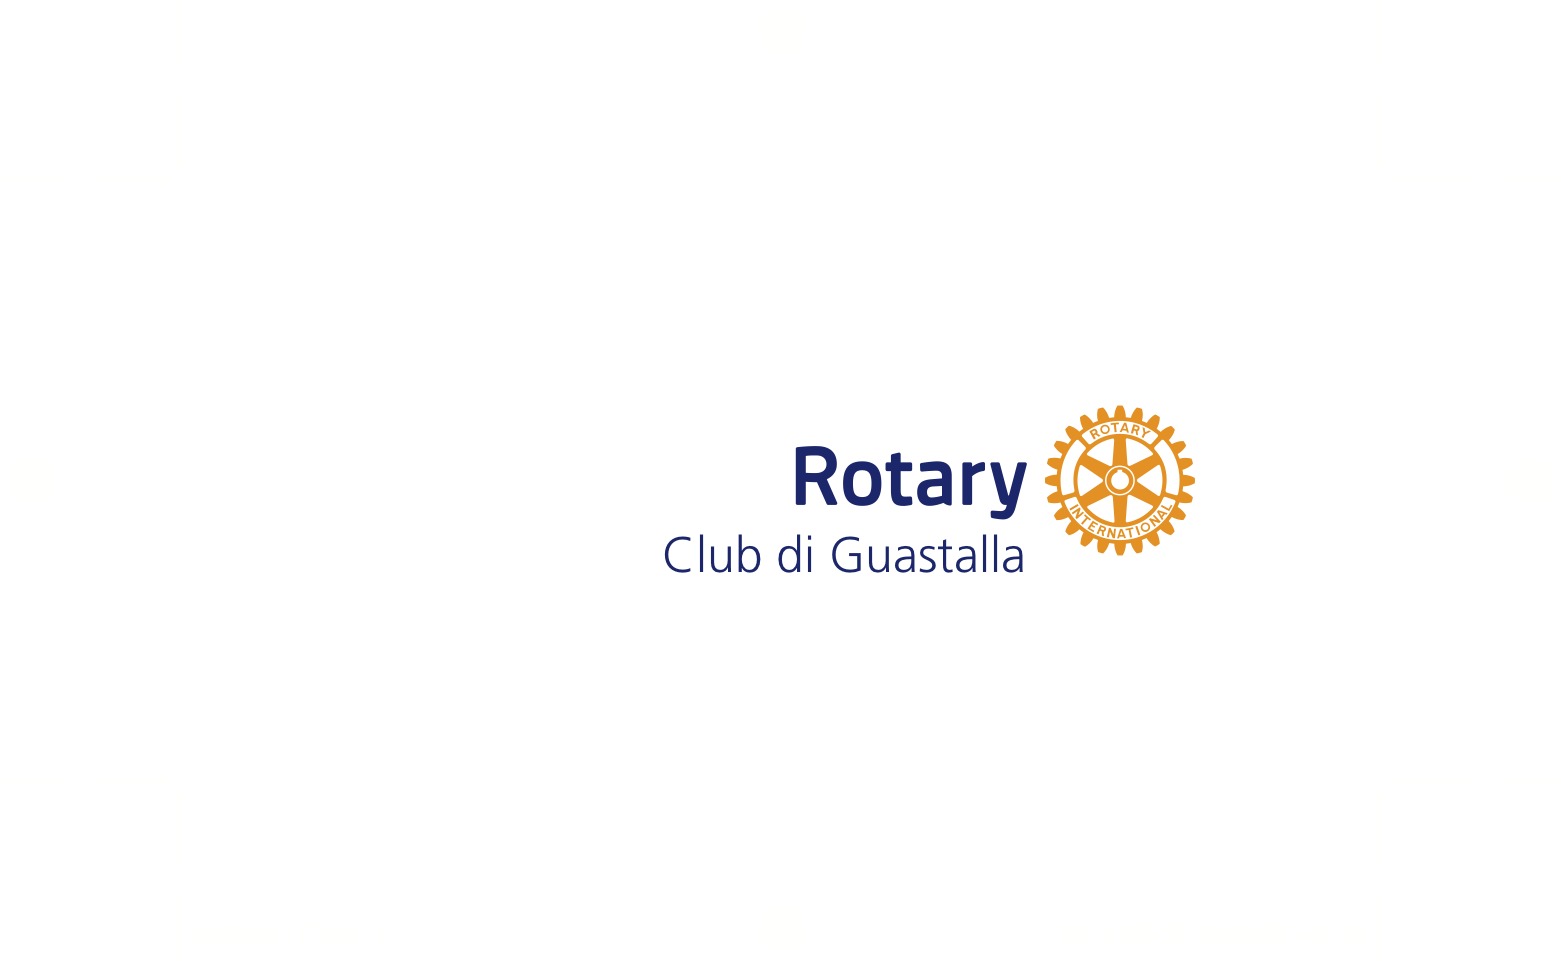 Rotary Club Guastalla